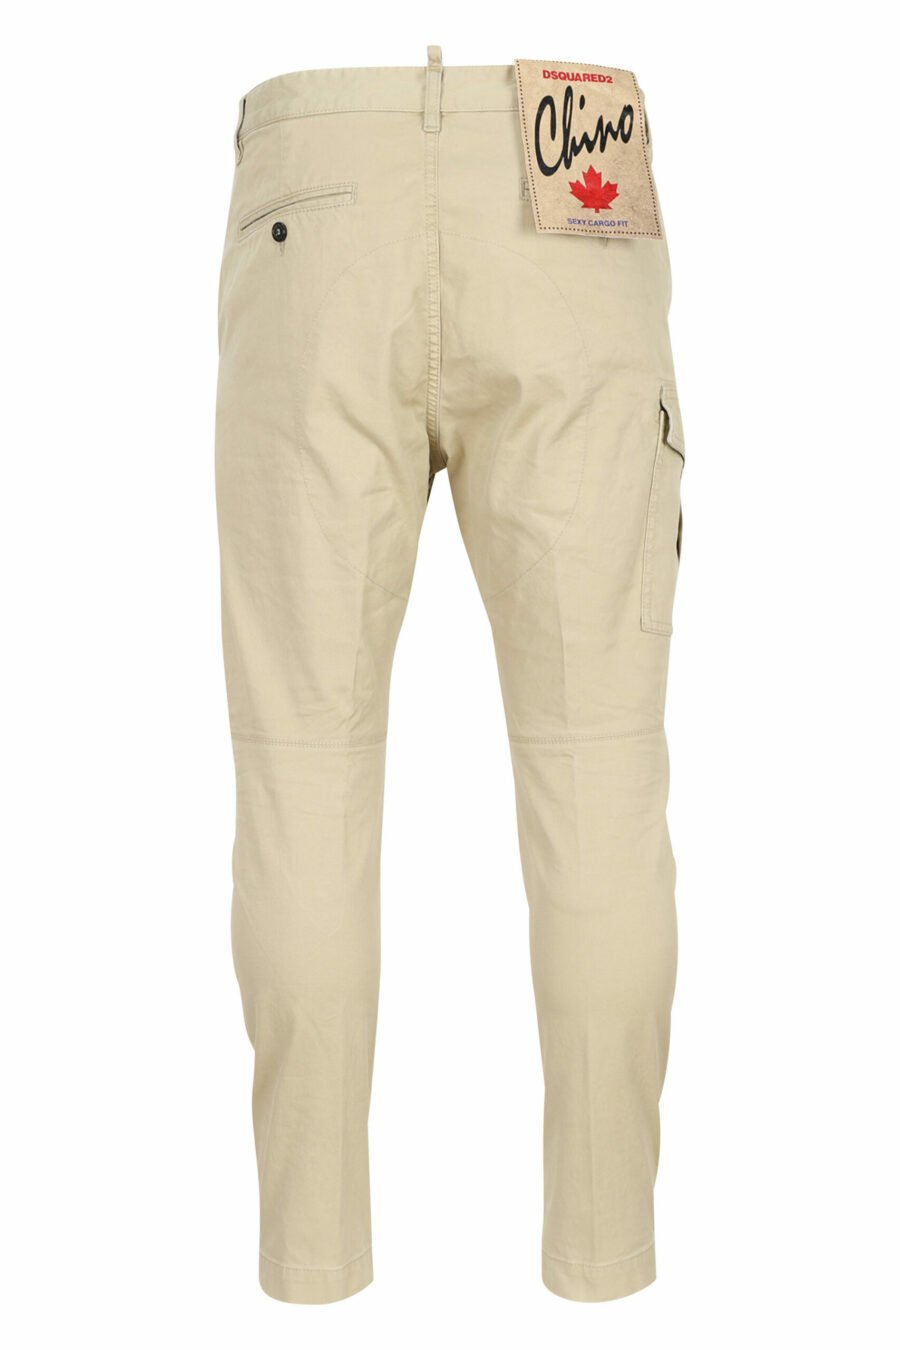 Pantalón "sexy cargo pant" beige con bolsillos laterales - 8052134973615 2 scaled